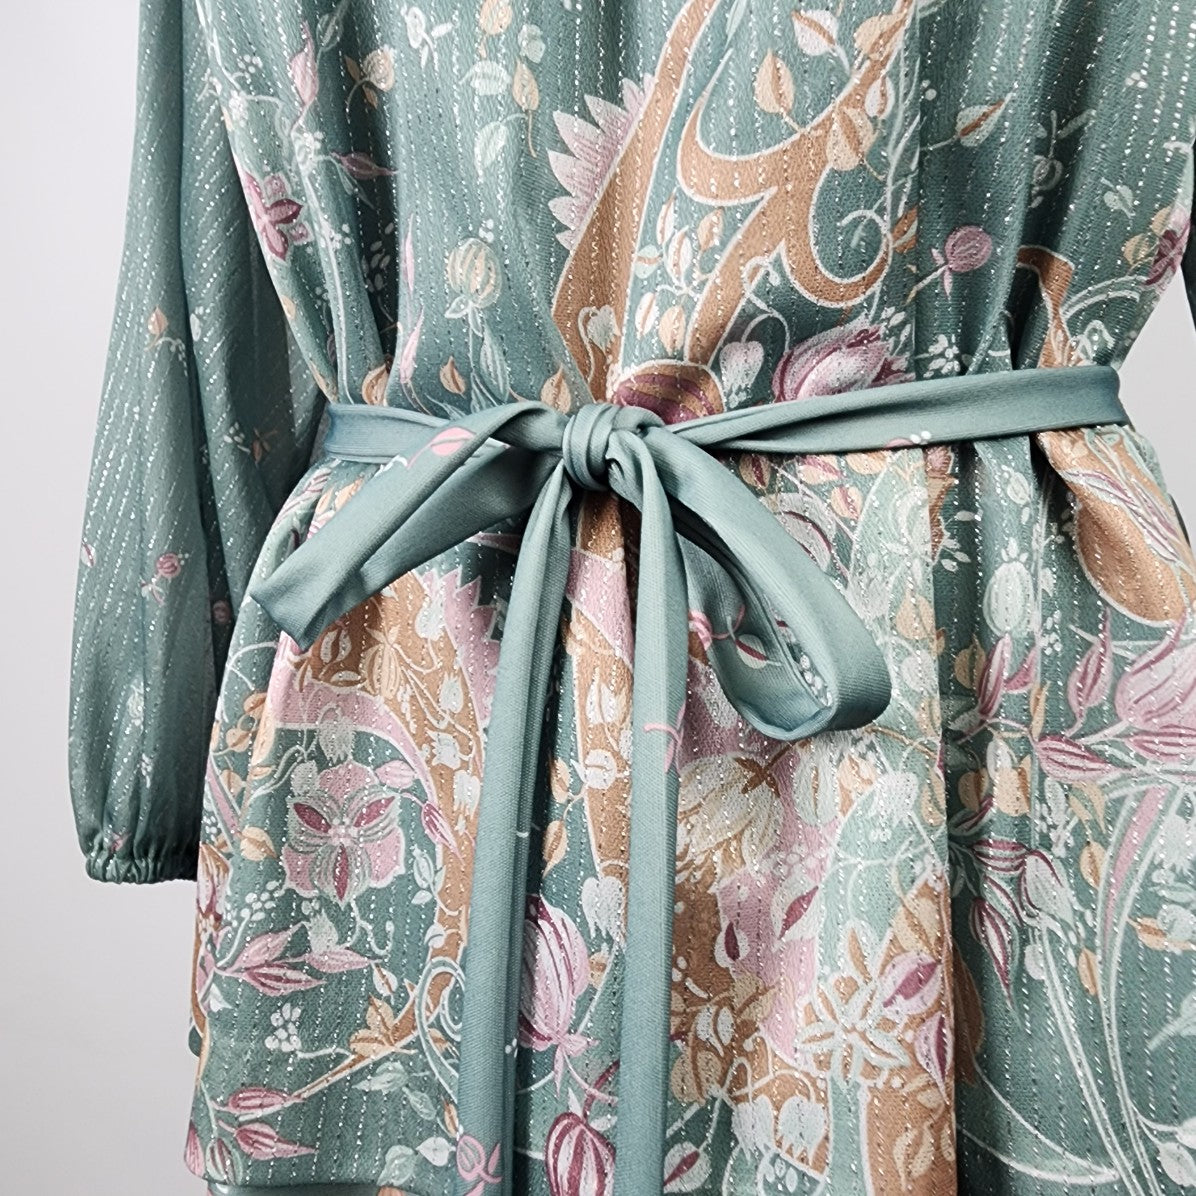 Vintage Renee Christine Green Floral Belted Midi Dress Size L